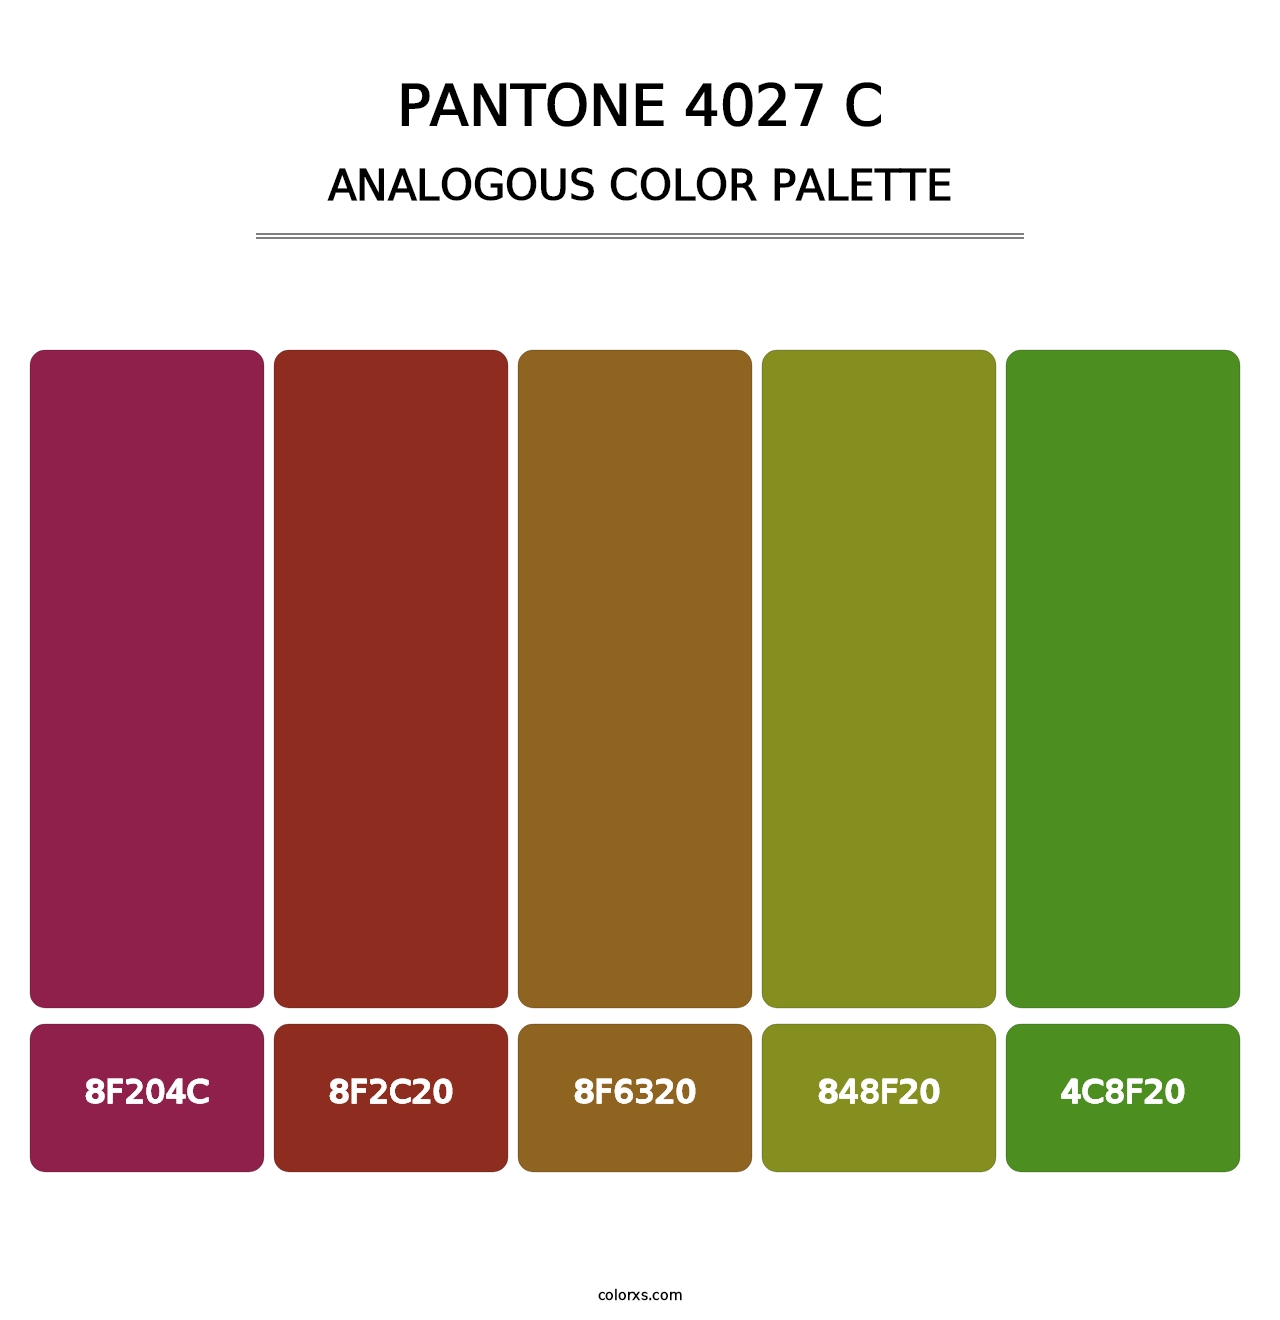 PANTONE 4027 C - Analogous Color Palette